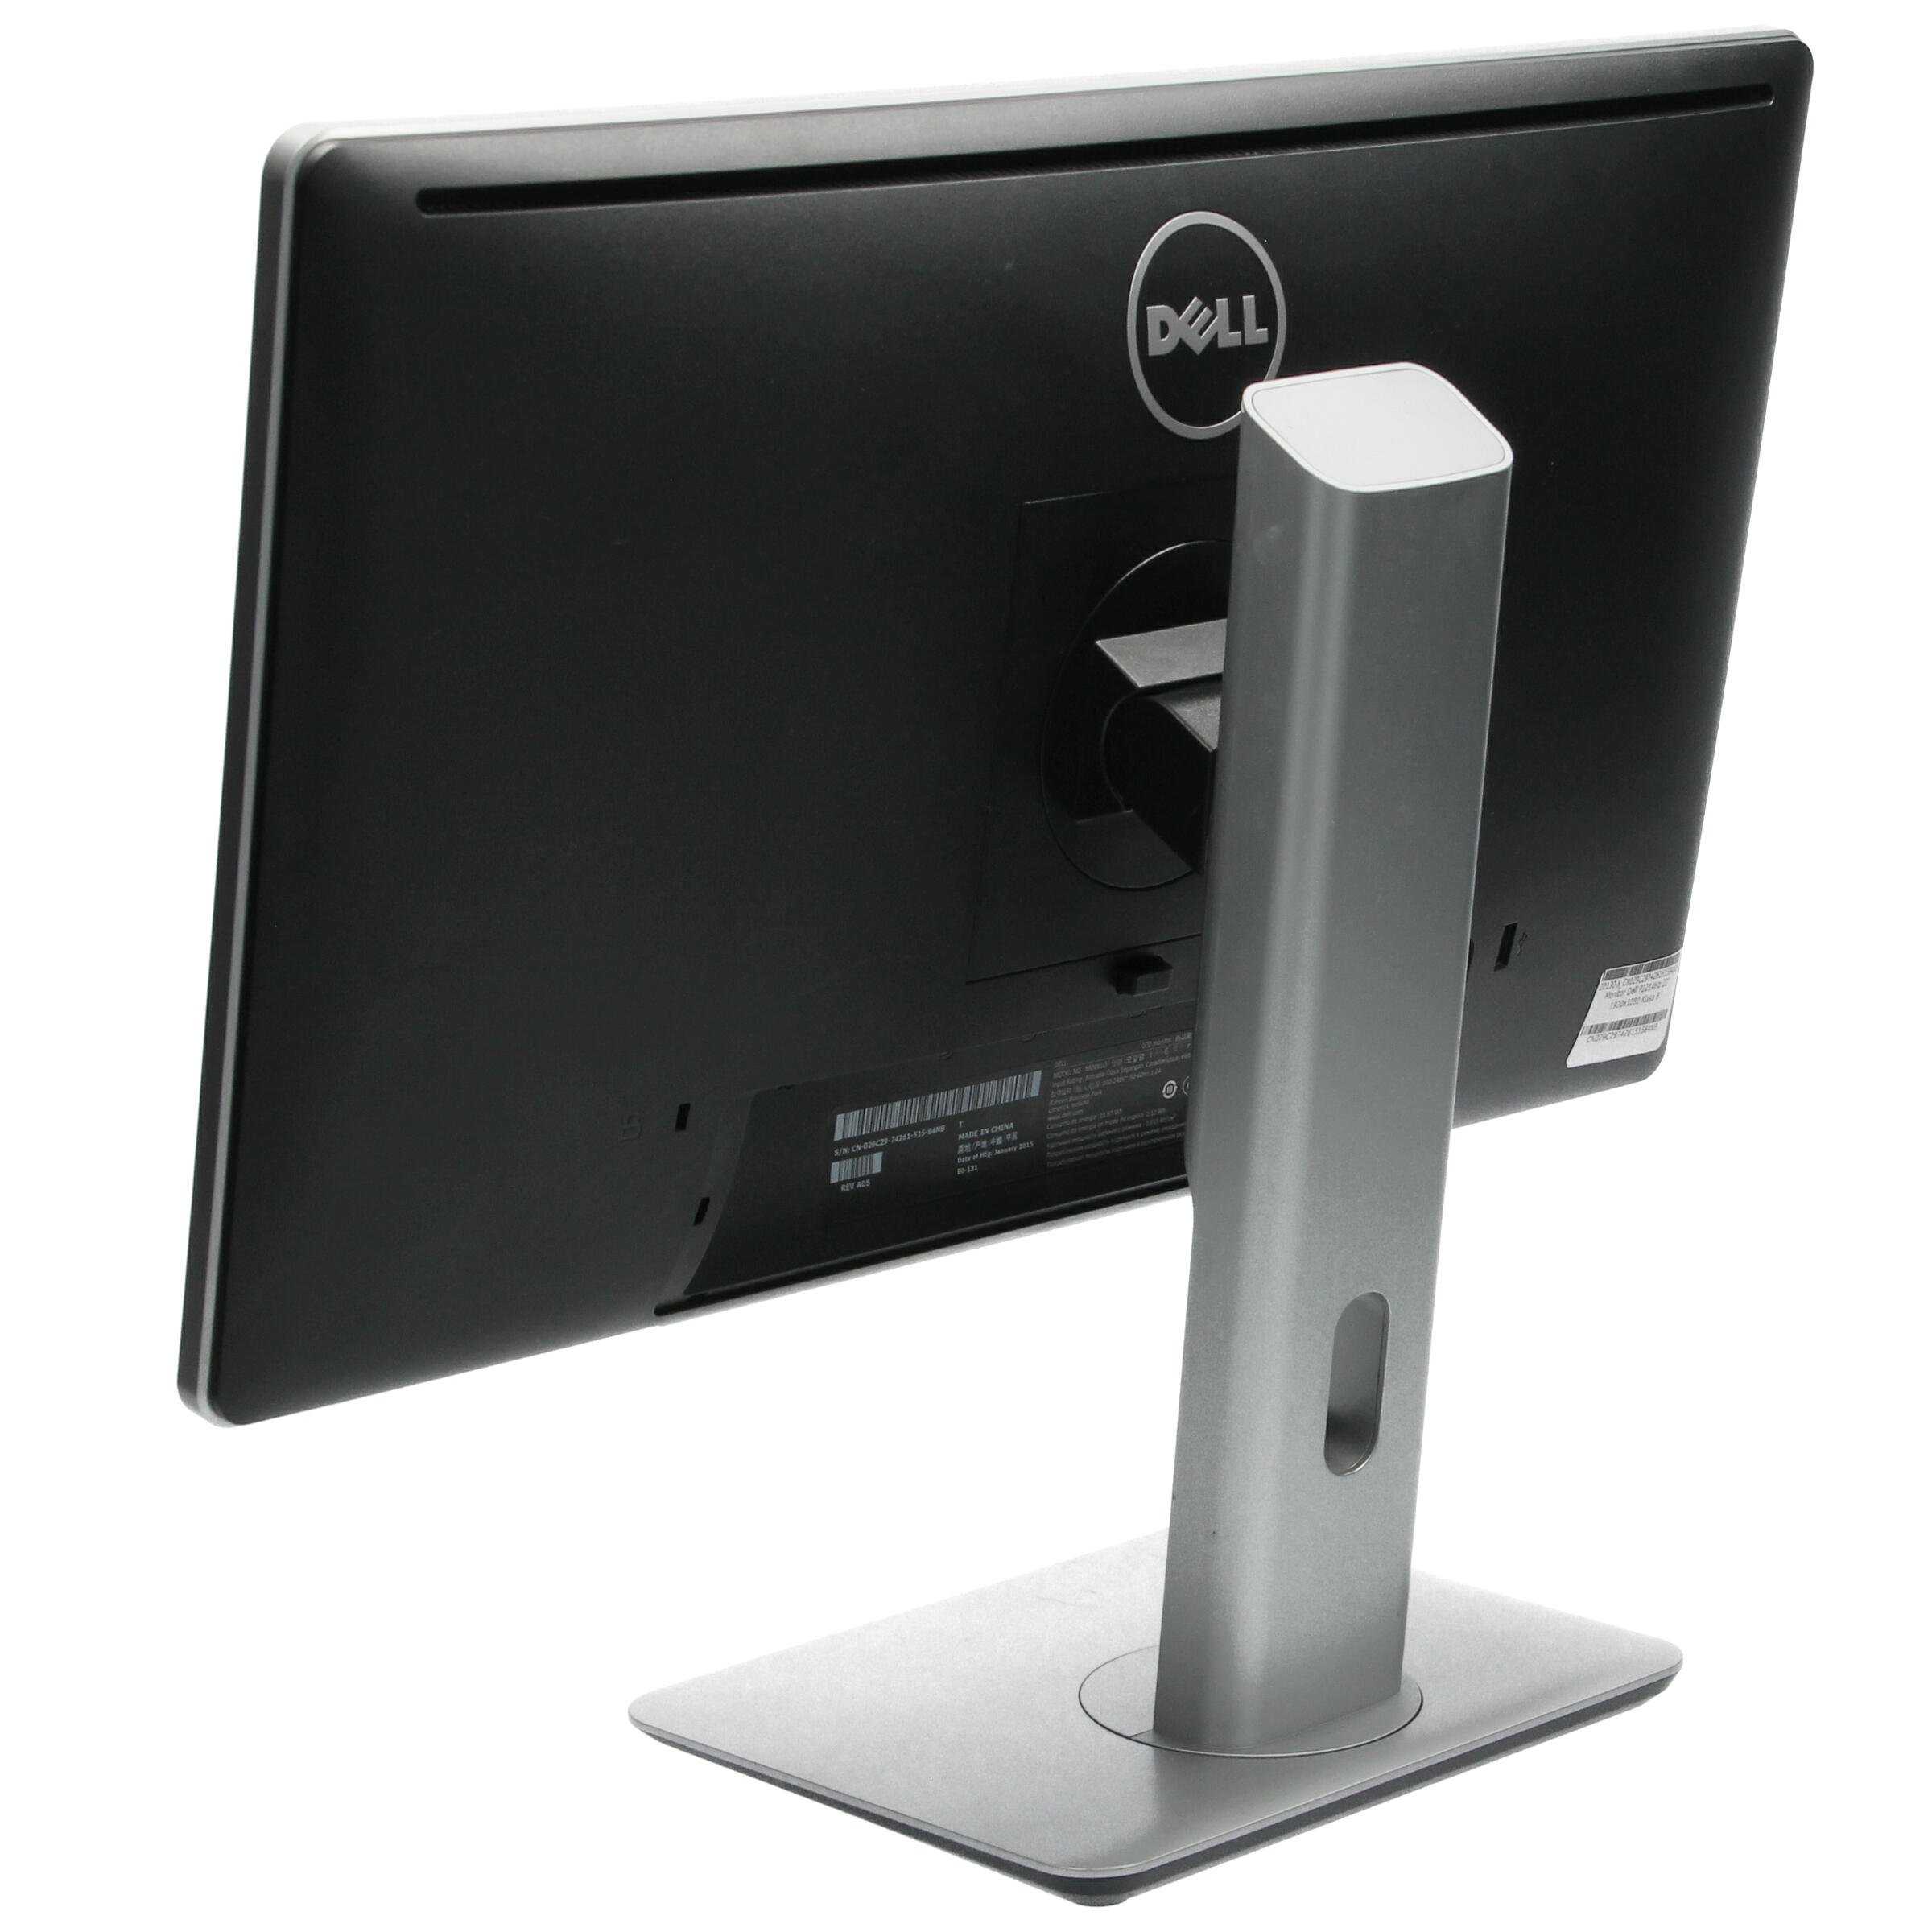 Монитор Dell P2314H - подробные характеристики обзоры видео фото Цены в интернет-магазинах где можно купить монитор Dell P2314H